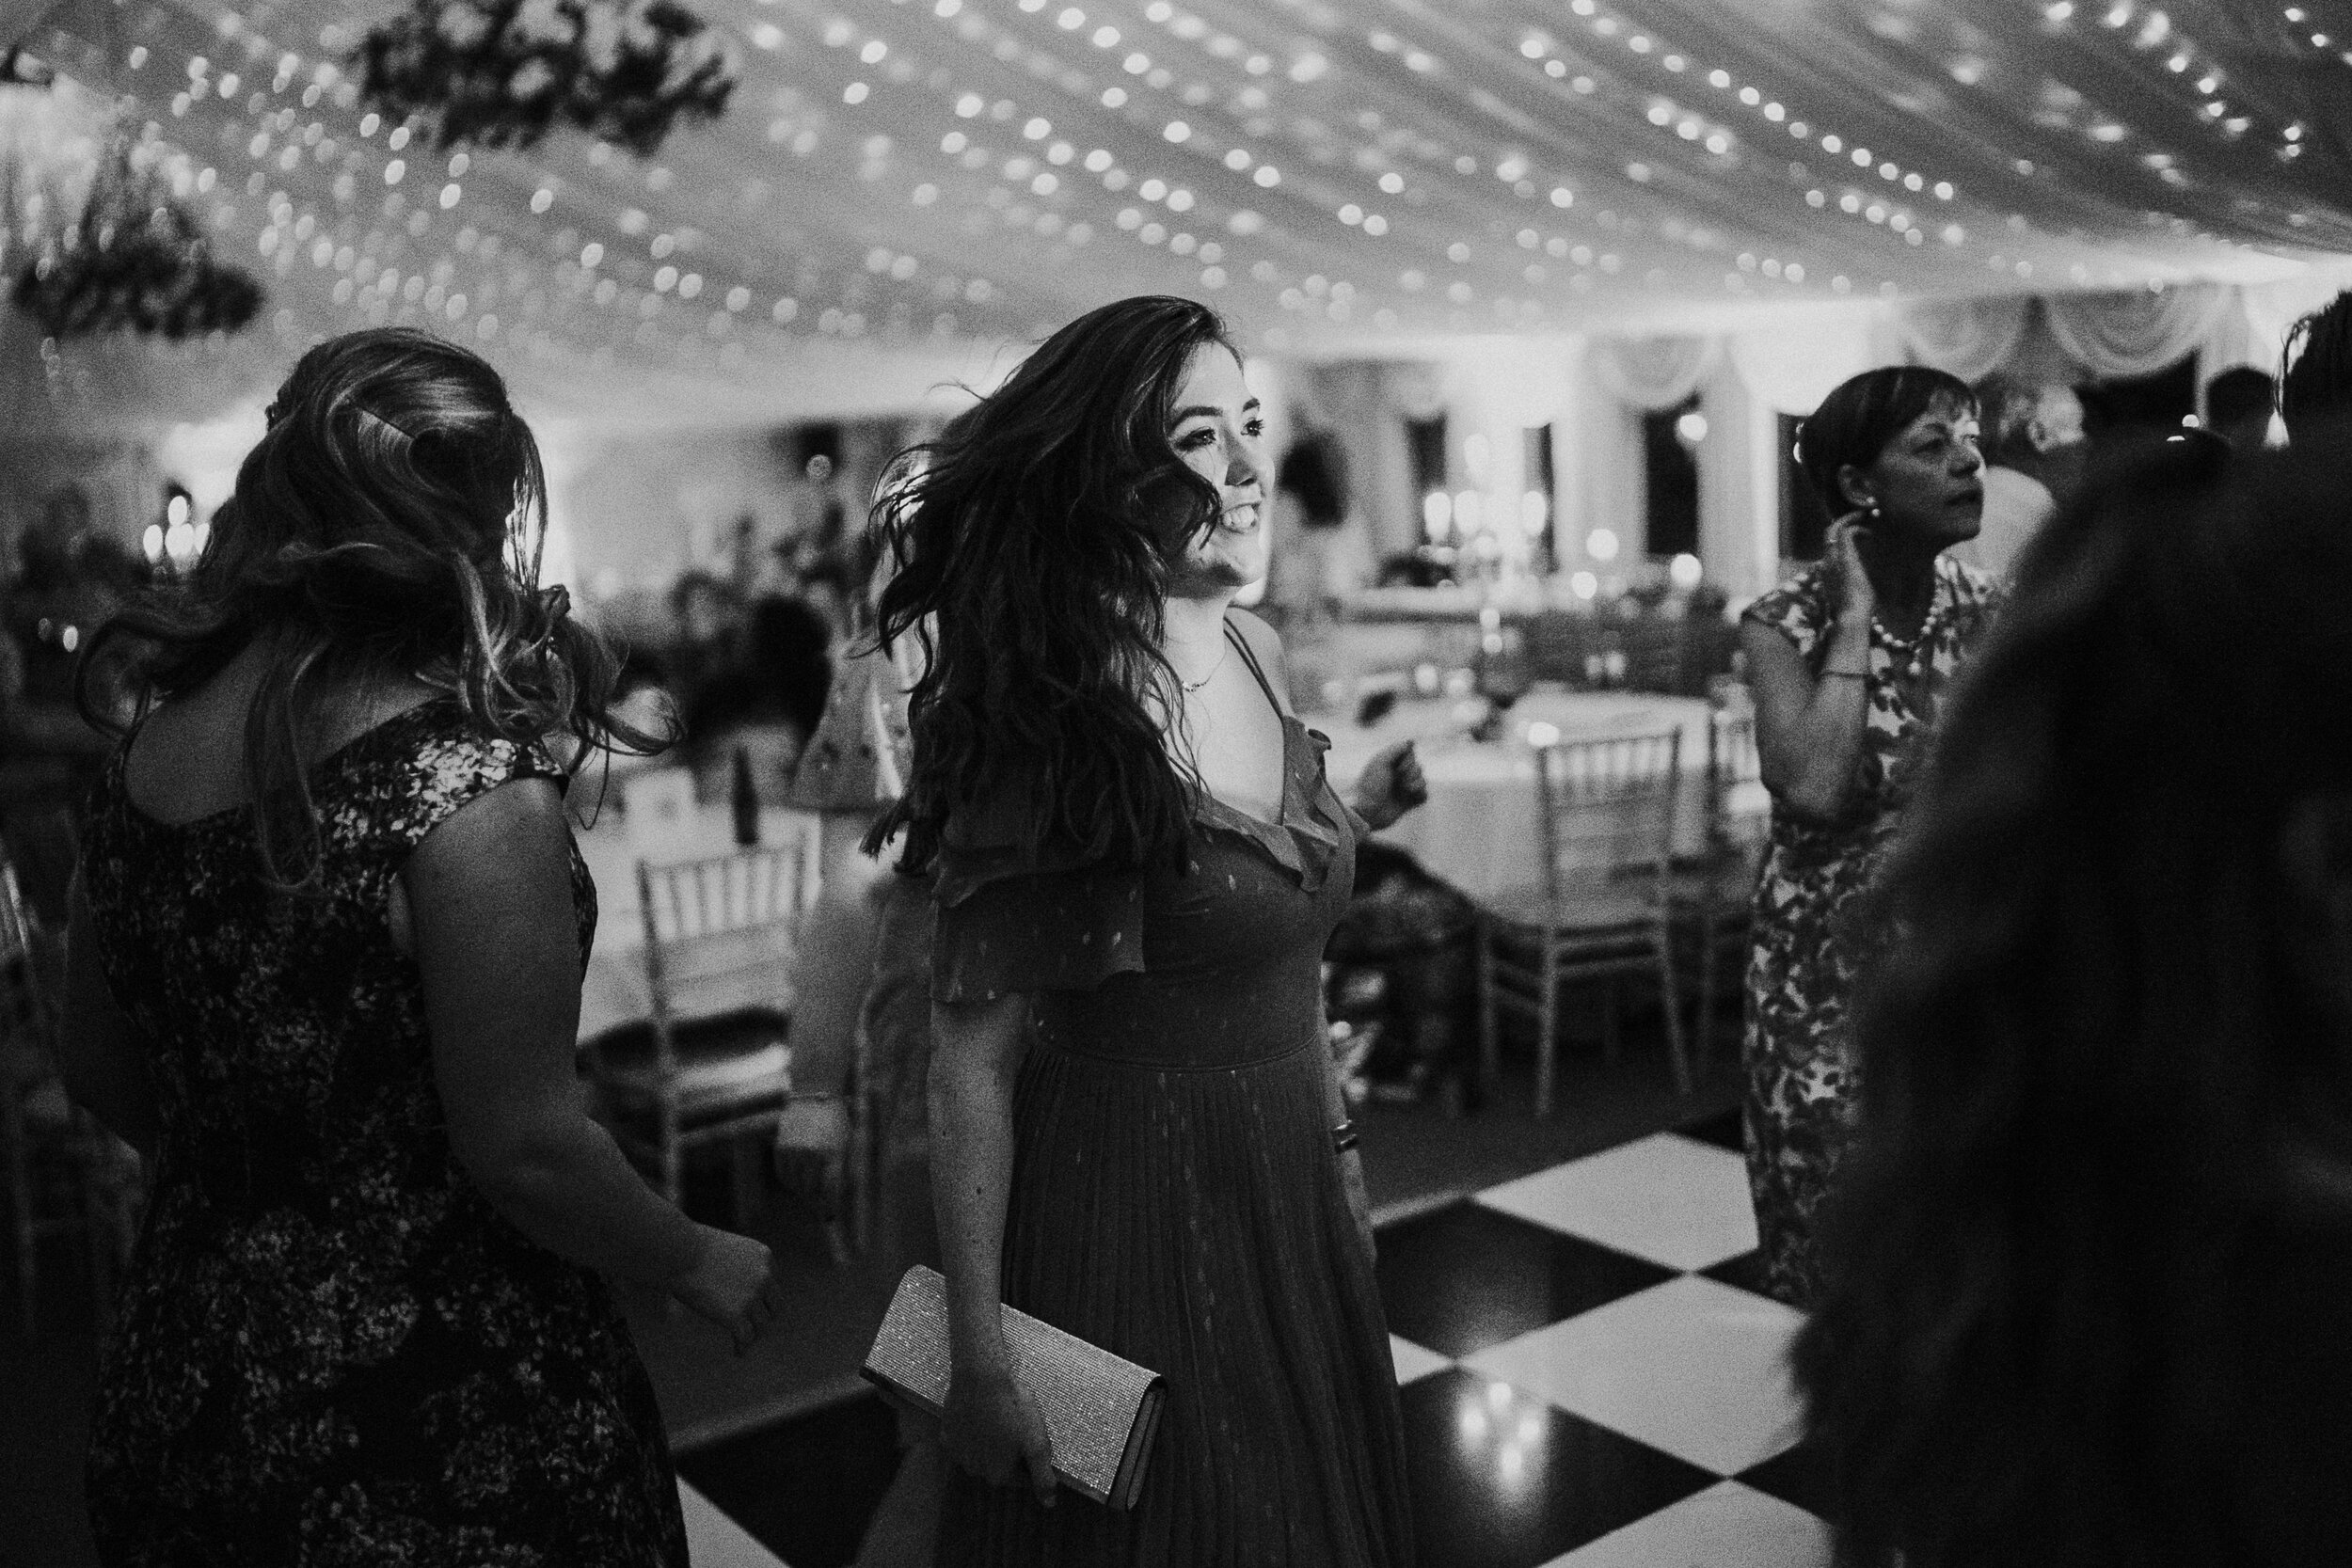 irish dancing wedding evening reception